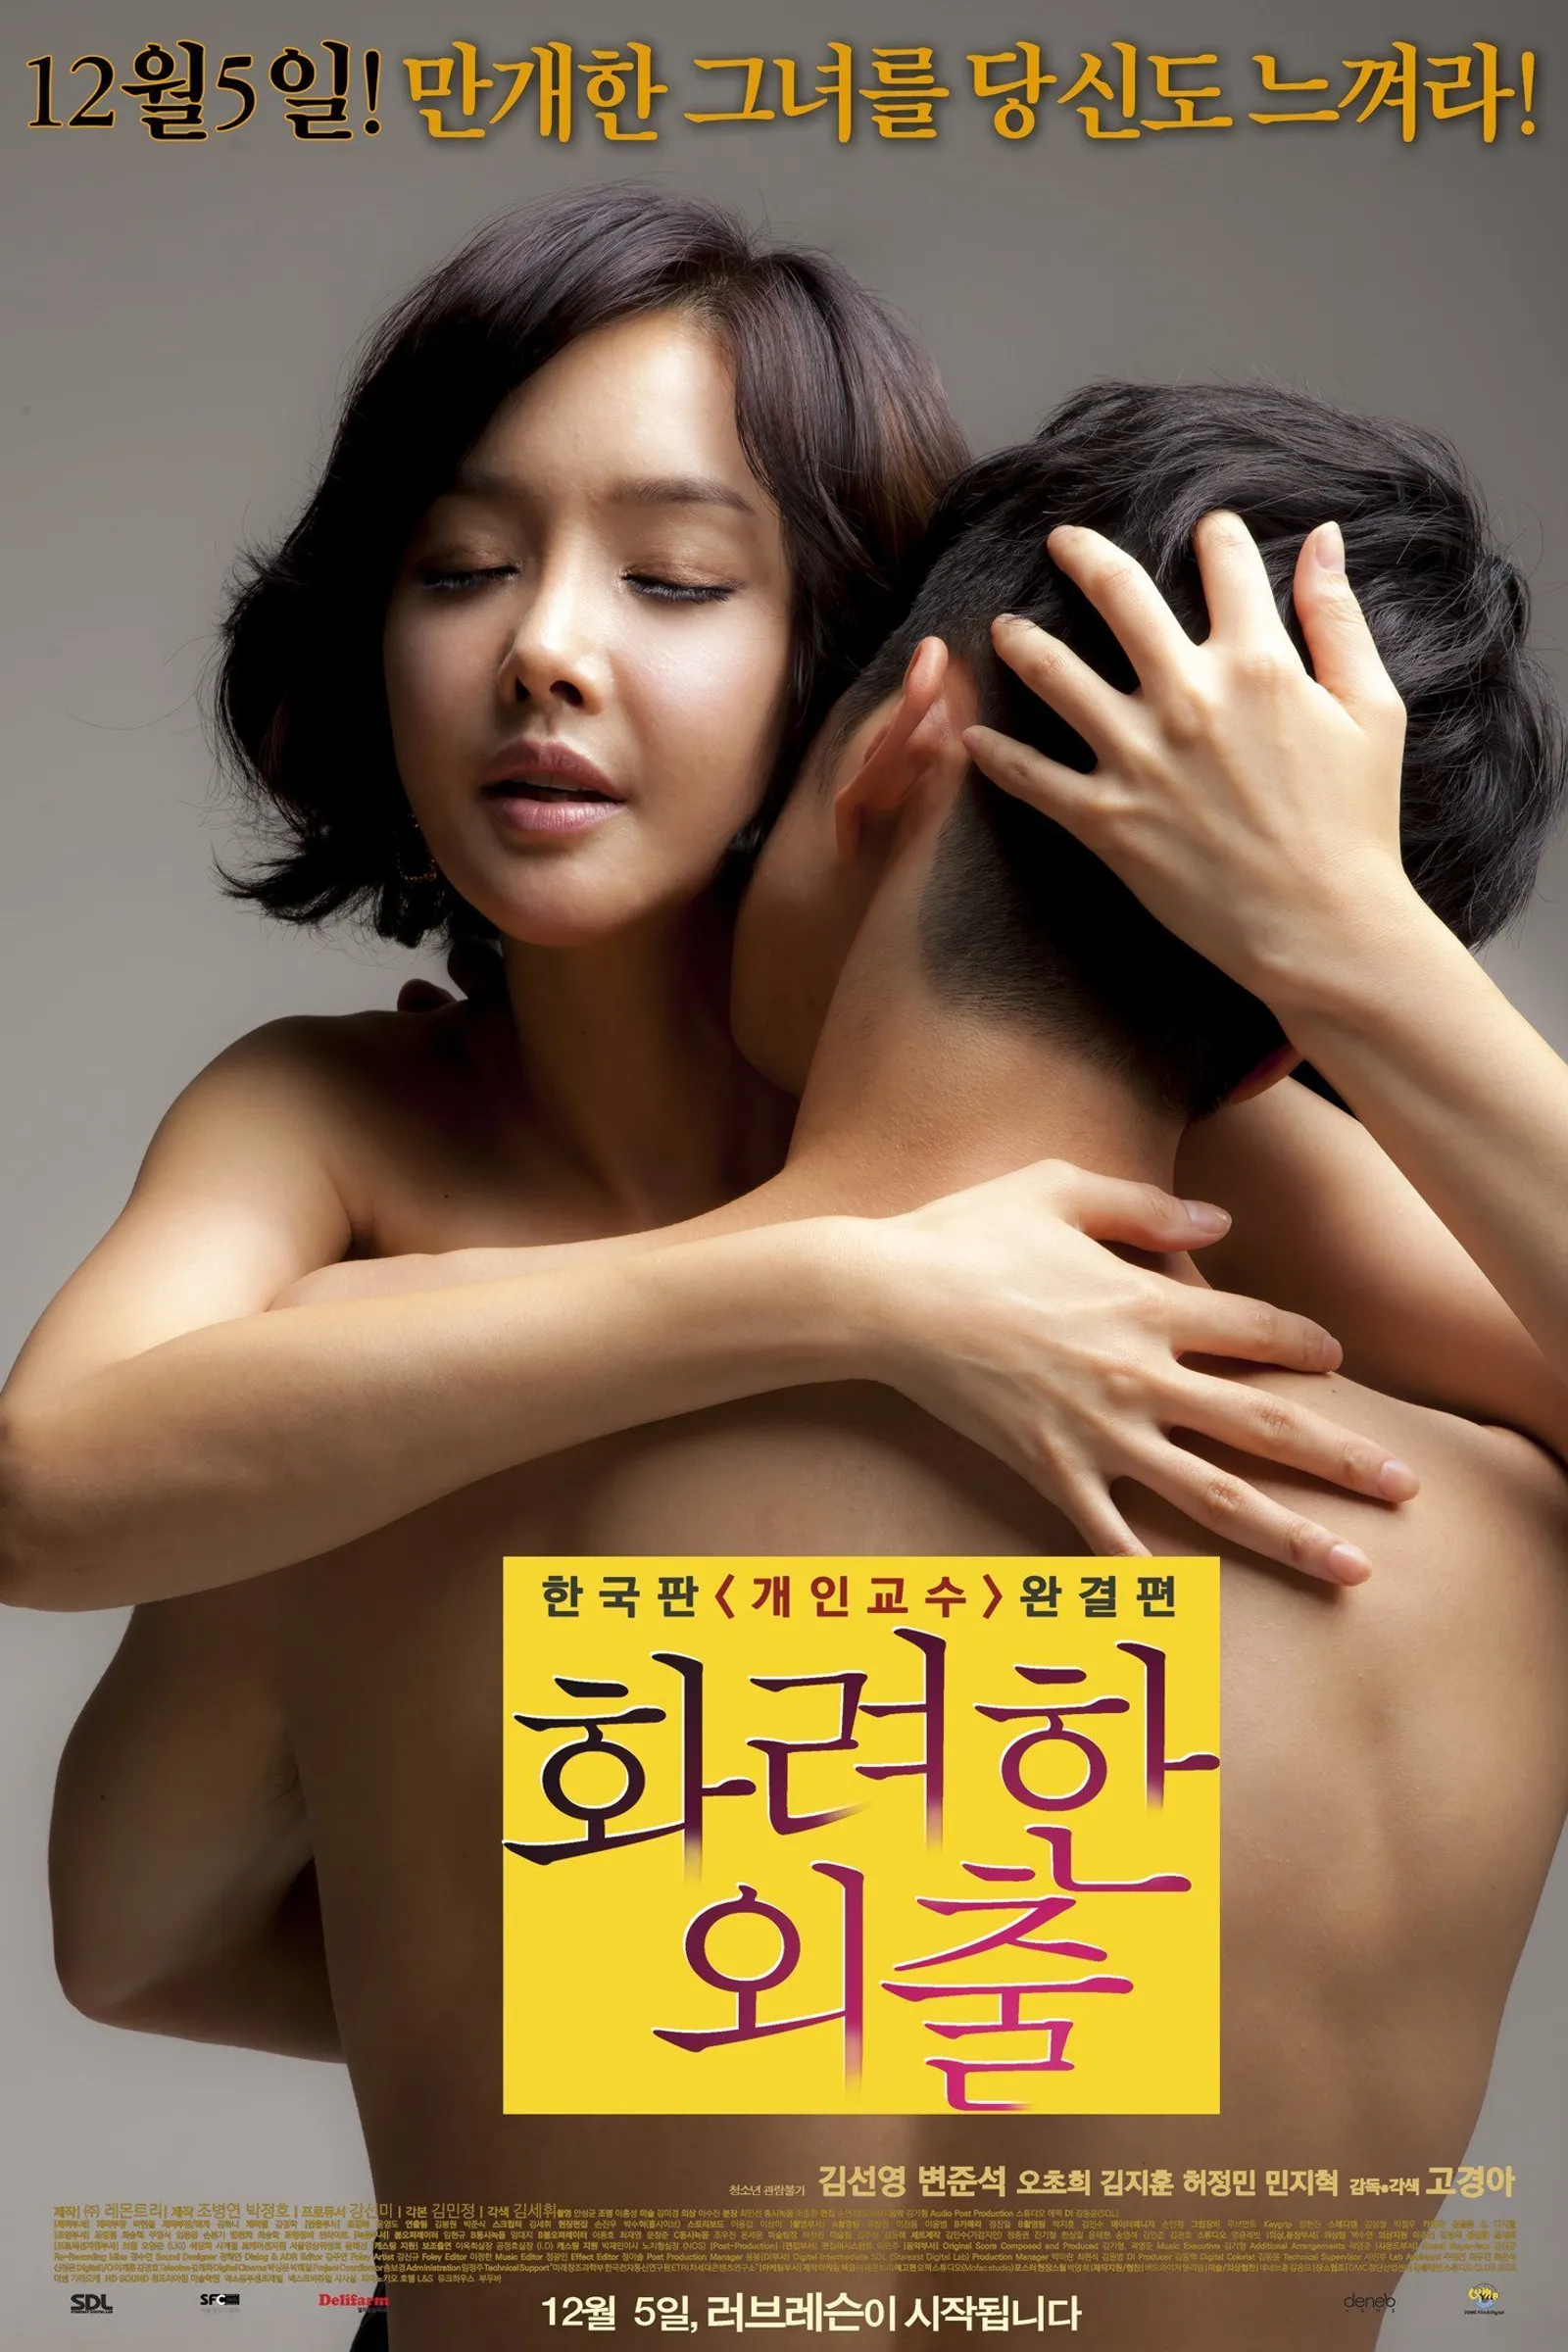 6 Film Hot Korea yang Tidak Pernah Ditayangkan di TV